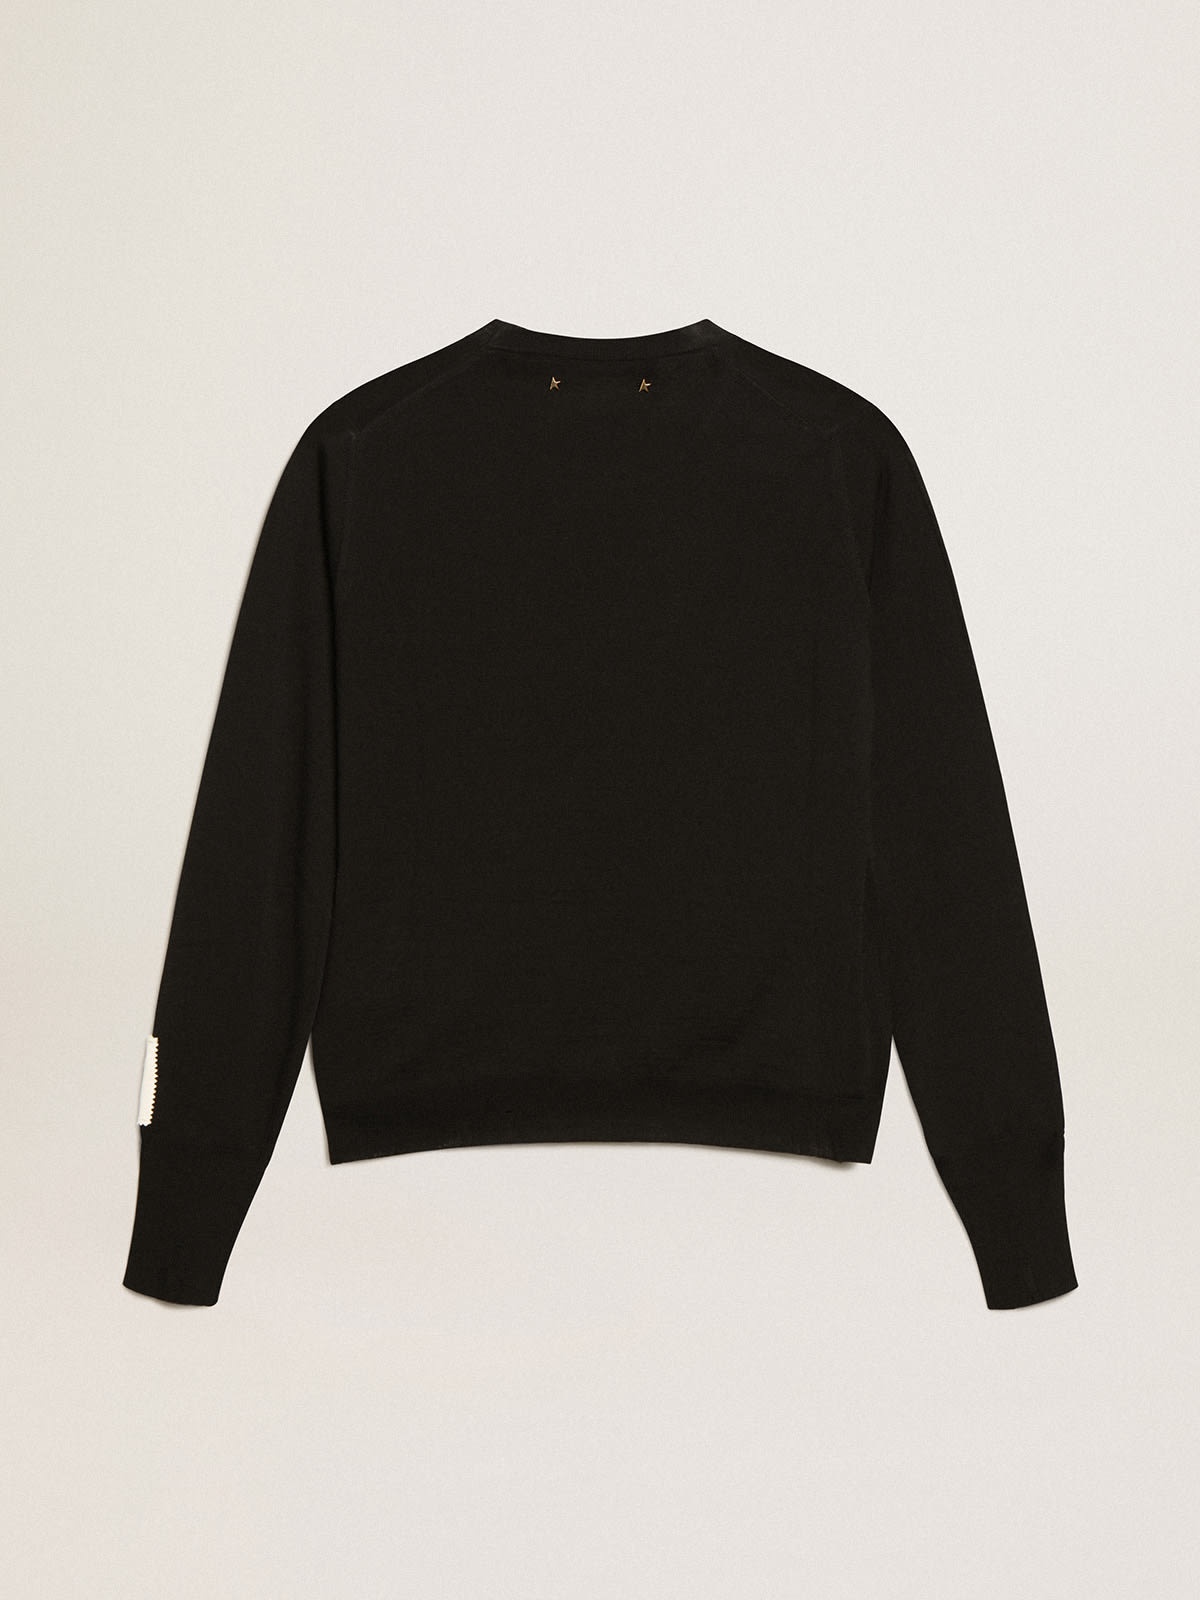 Women's round-neck sweater in black wool - 5